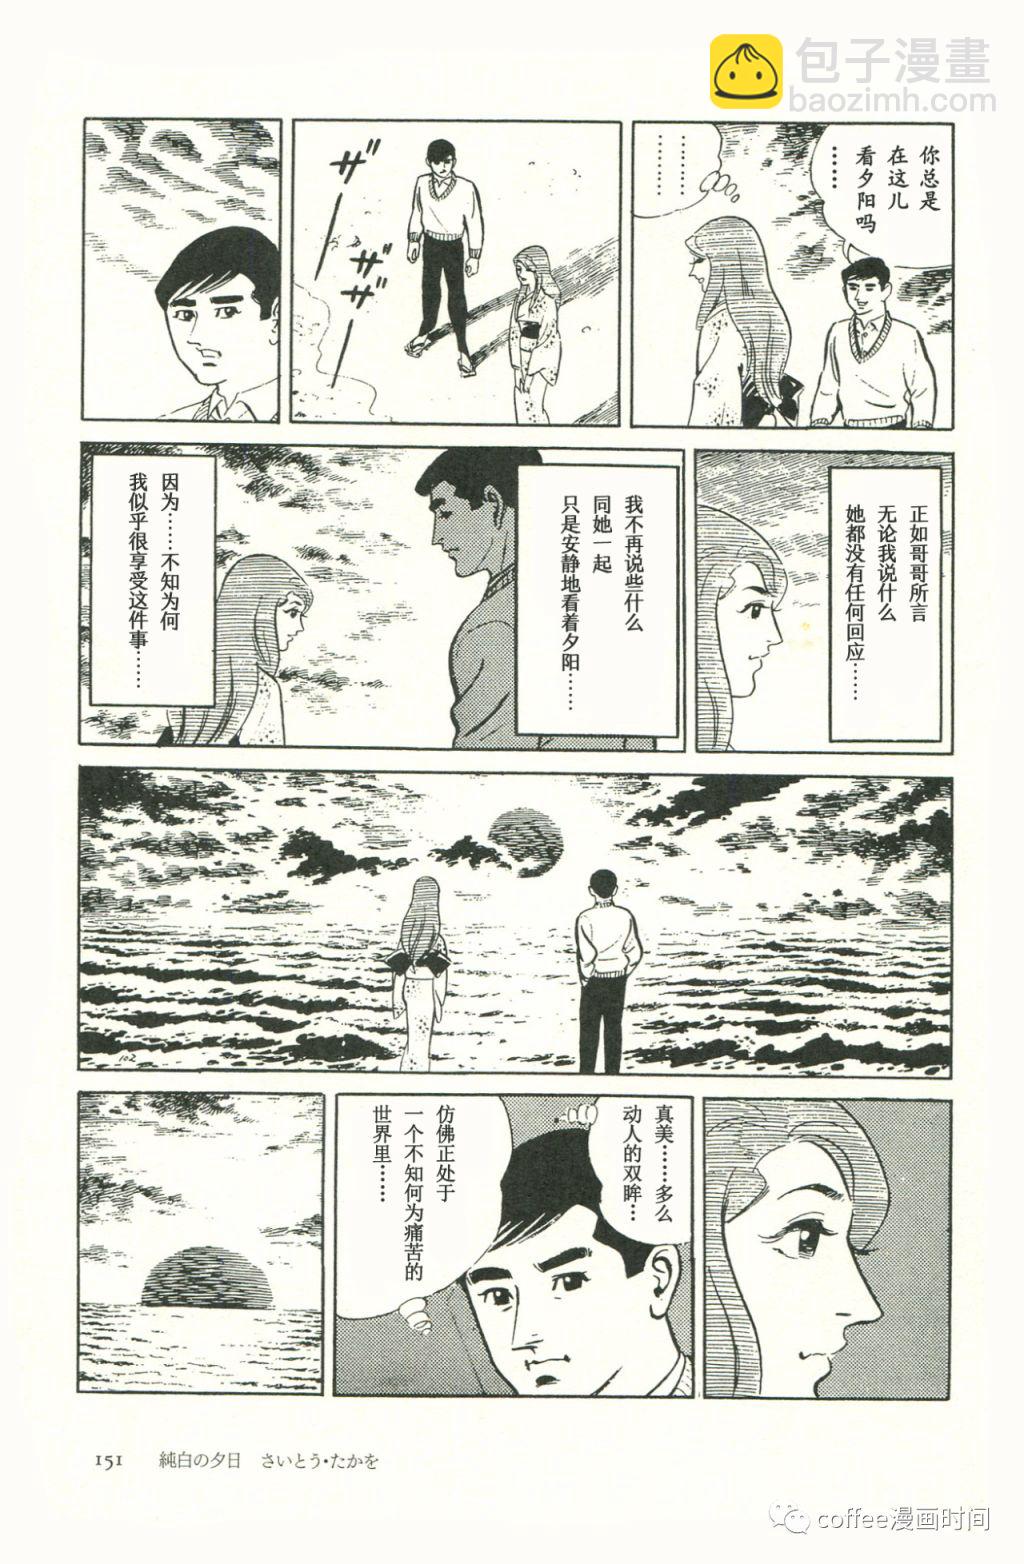 日本短篇漫畫傑作集 - 齋藤隆夫《純白的夕陽》 - 6